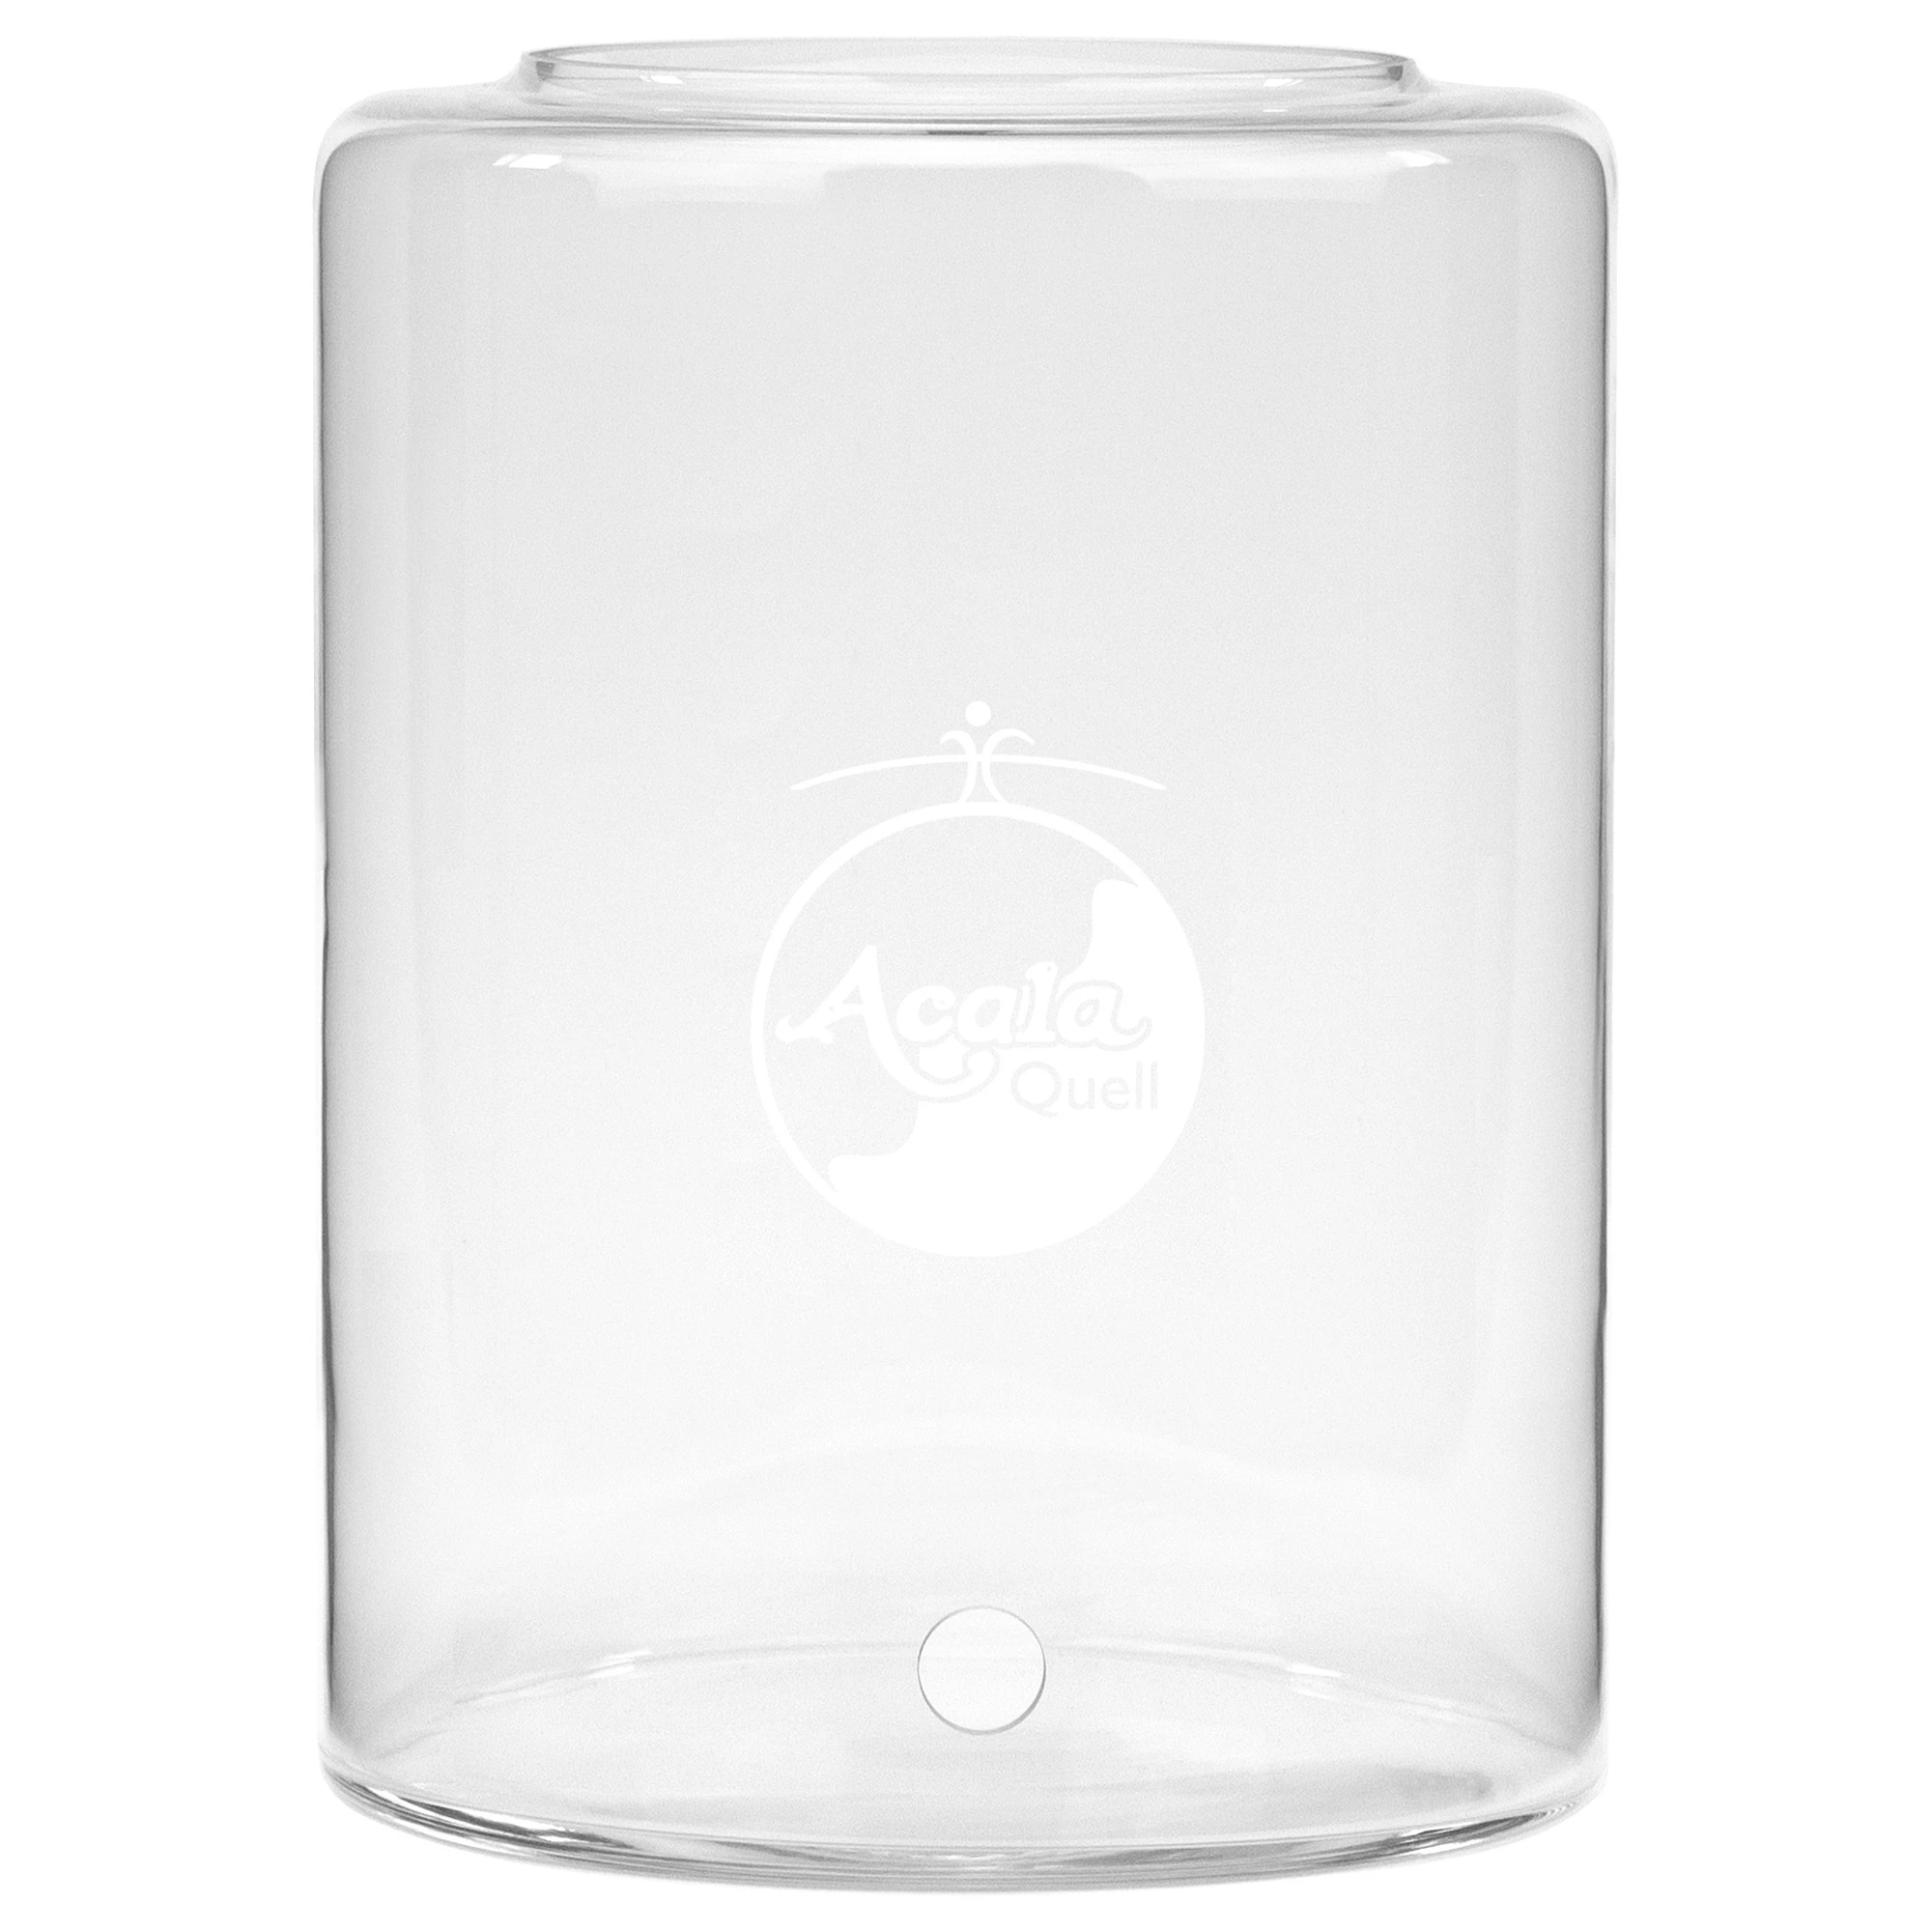 Zu sehen ist ein 7L Glastank für den Acala Stand Wasserfilter Midi in kristallklar vor weißem Hintergrund. Er hat ein Bohrloch für den Wasserhahn und darüber sieht man das AcalaQuell Logo in weiß, welches auf den Tank graviert ist.